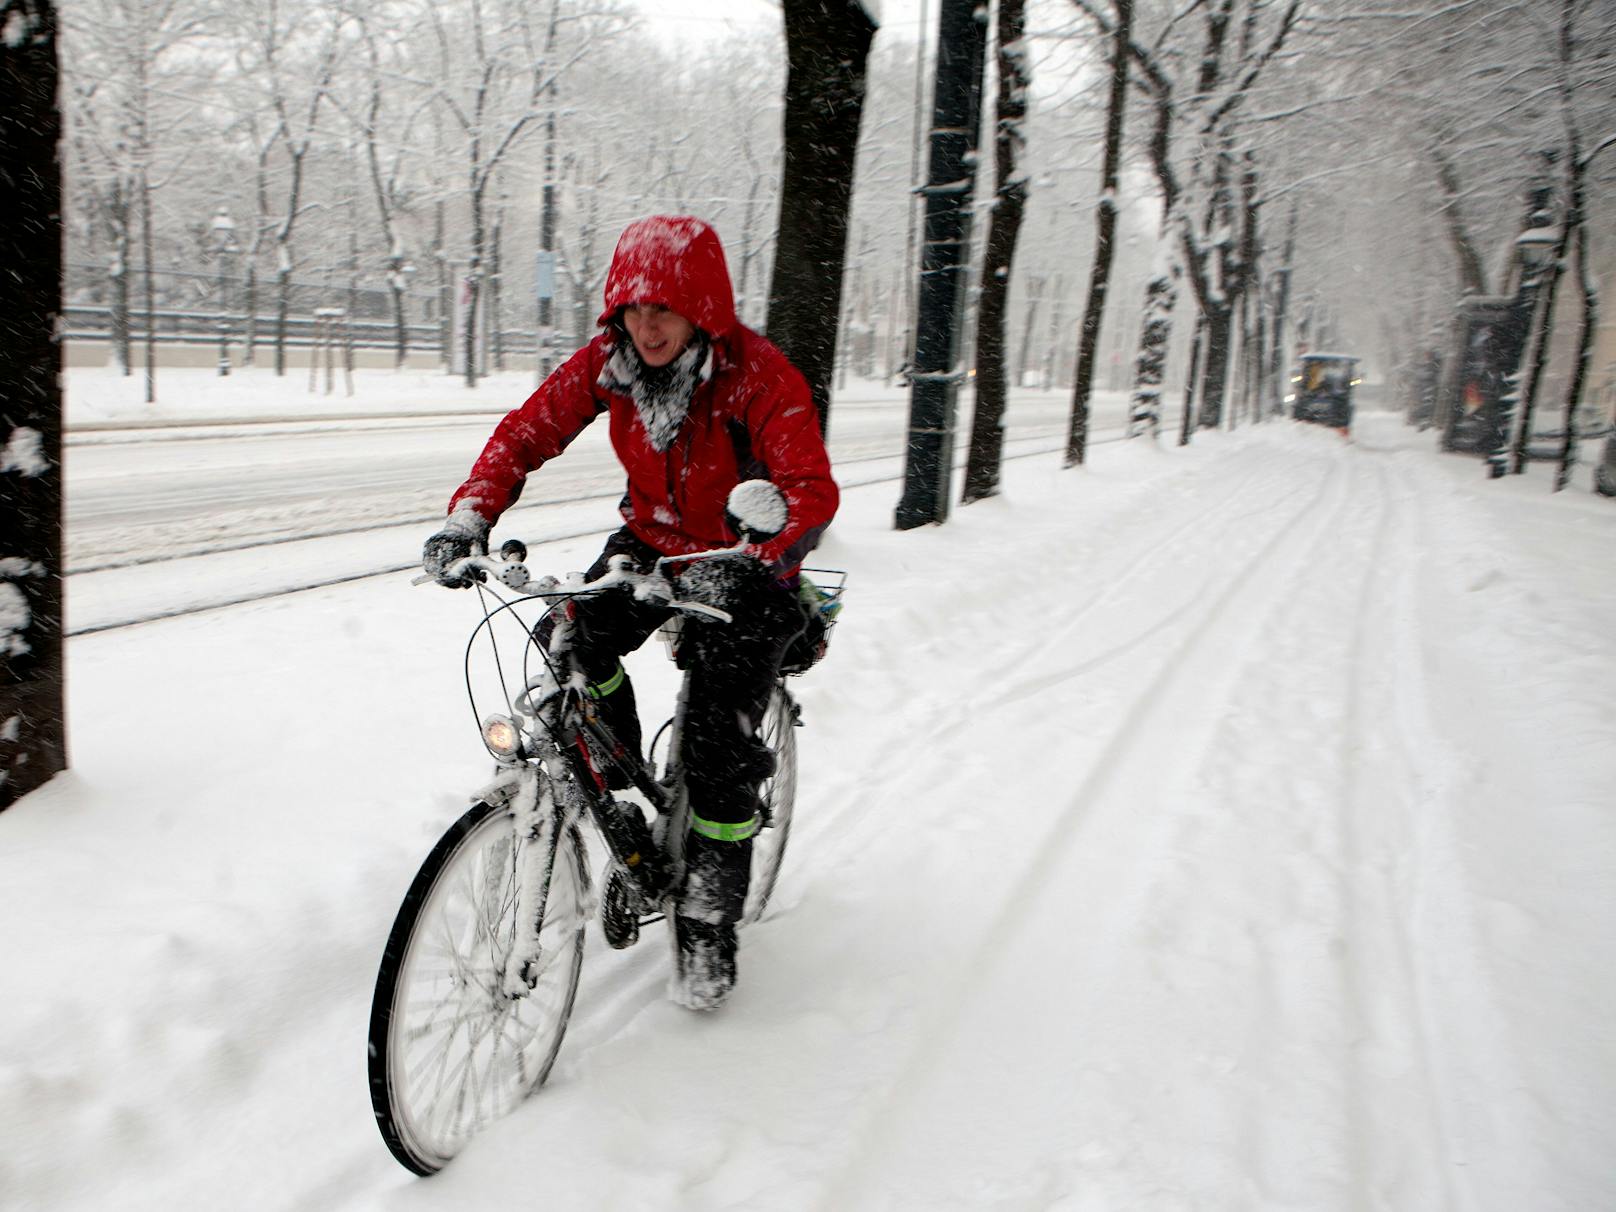 Das Motto dieser Winter-Radlerin lautet: Es gibt kein schlechtes Wetter, nur schlechte Ausrüstung.